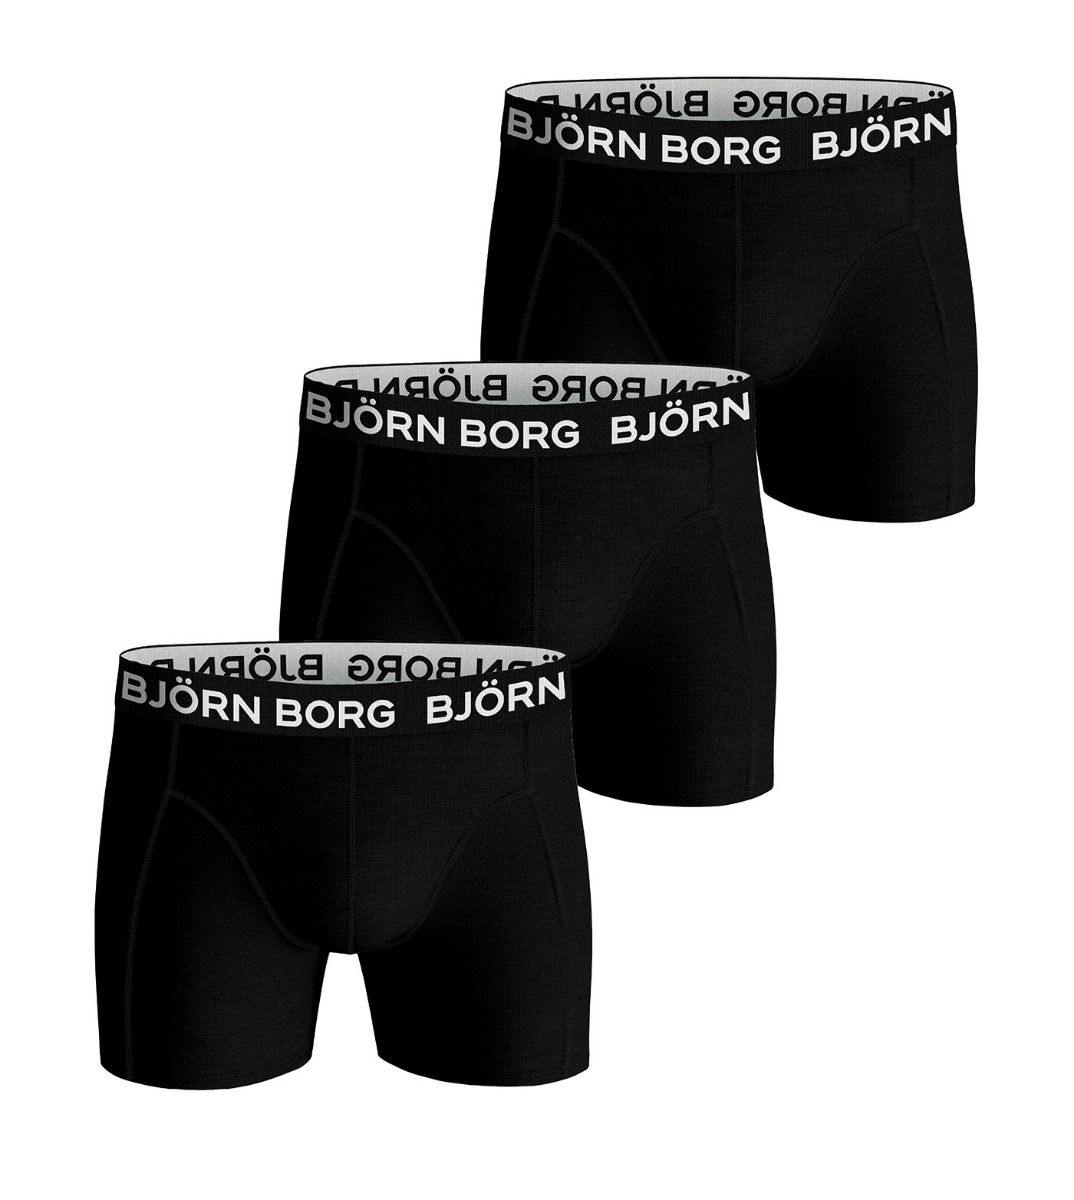 Twinkelen Besparing heerlijkheid Bjorn Borg short 3 pack Core Solid J 9999-1230-90651